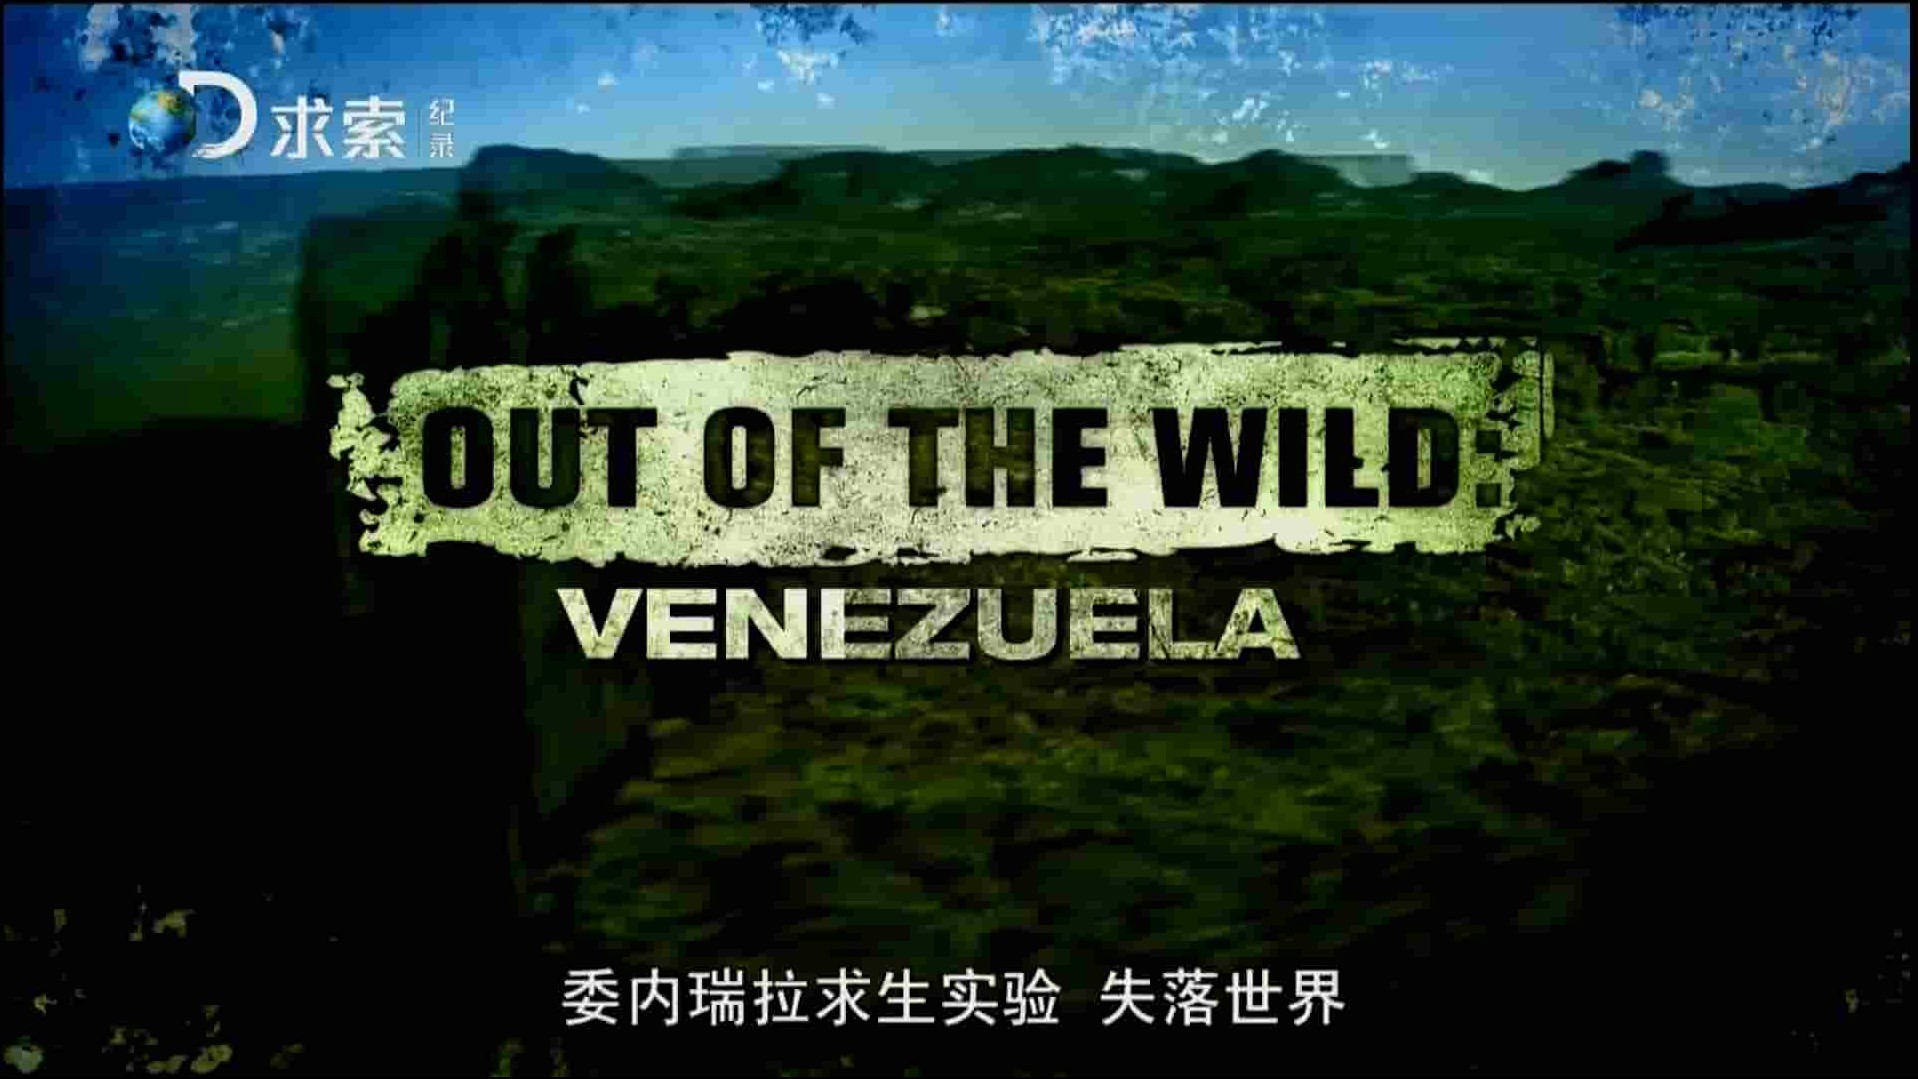  探索频道《委内瑞拉求生实验 Out Of The Wild：Venezuela》全8集 英语中字 1080P高清网盘下载 